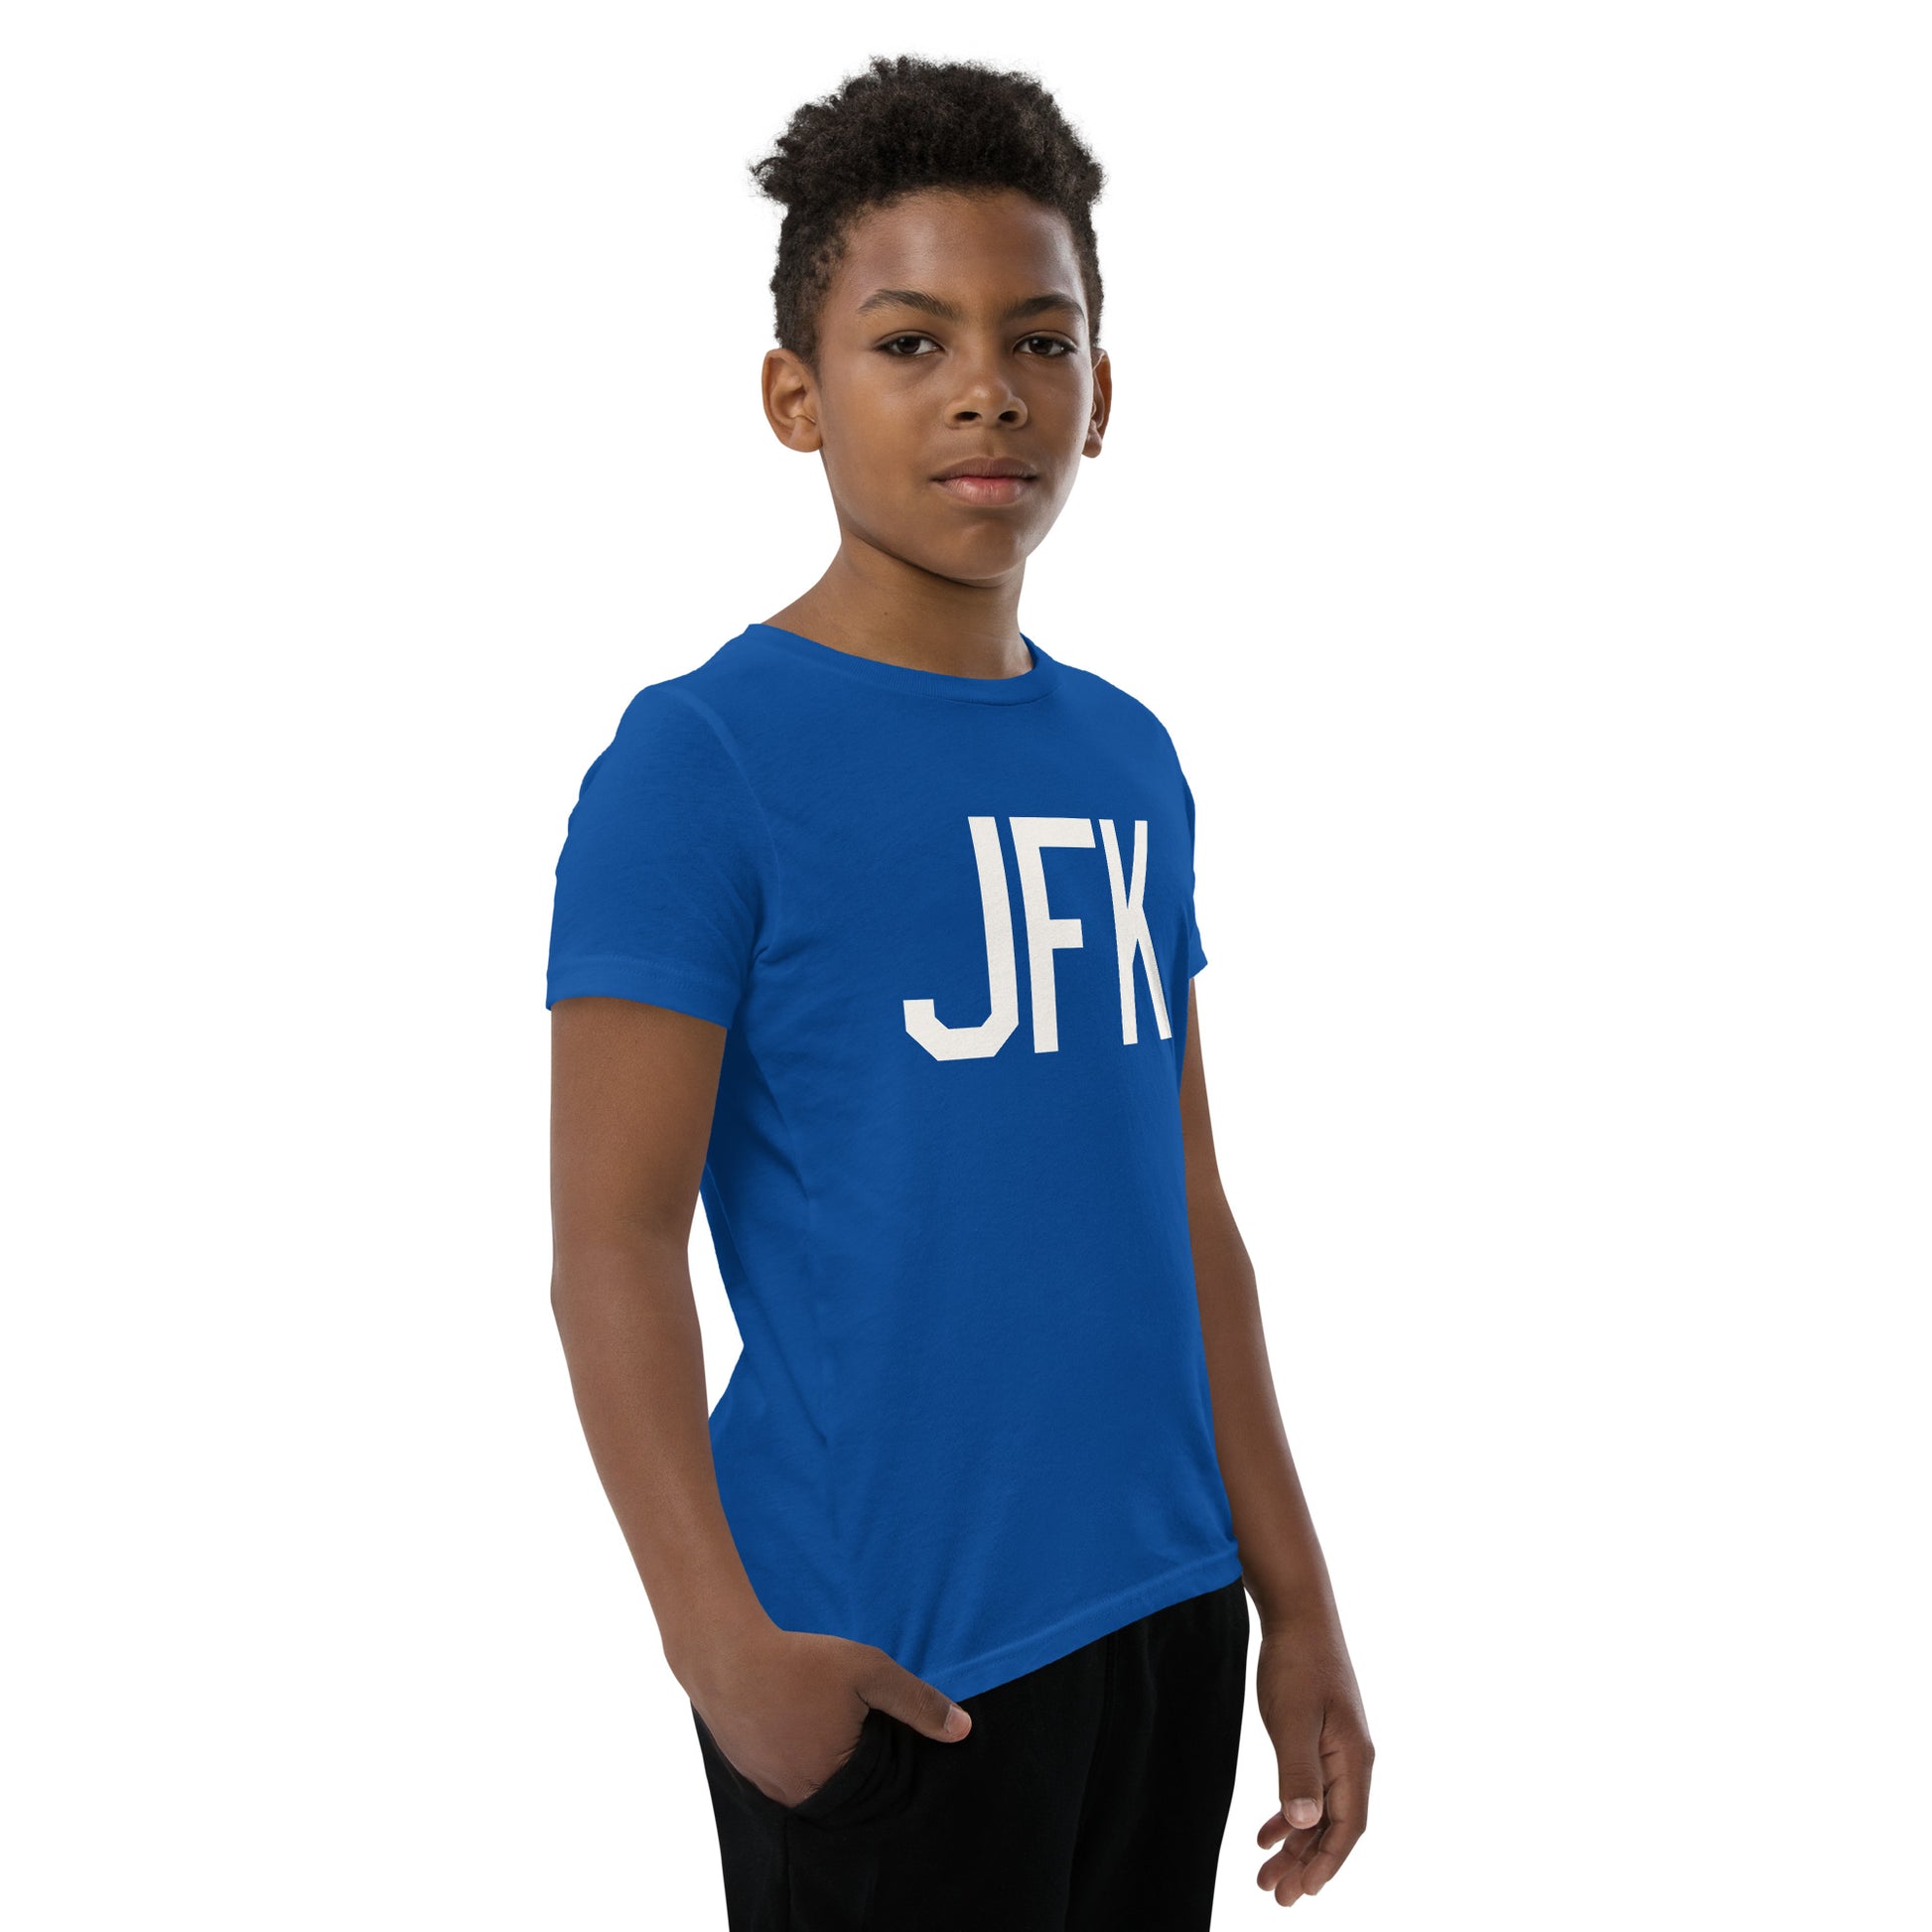 Kid's T-Shirt - White Graphic • JFK New York • YHM Designs - Image 12